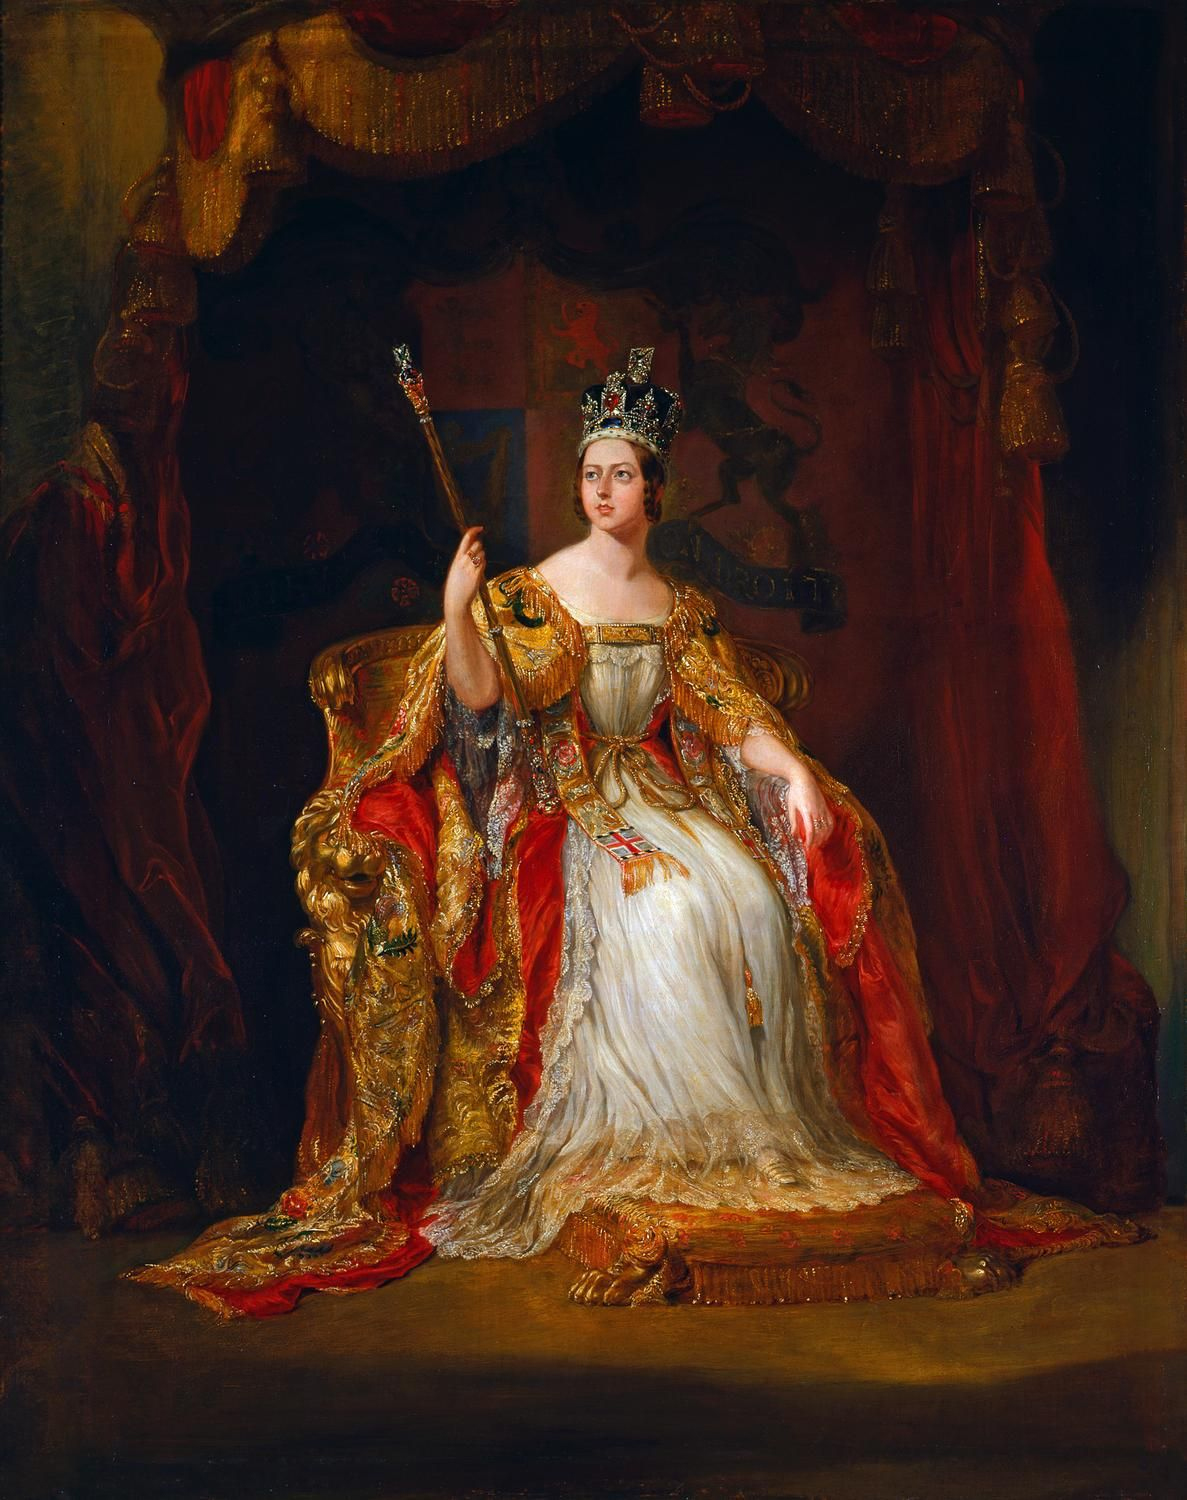 La Regina Victoria Ritratto di George Hayter - commos-wikipedia.org